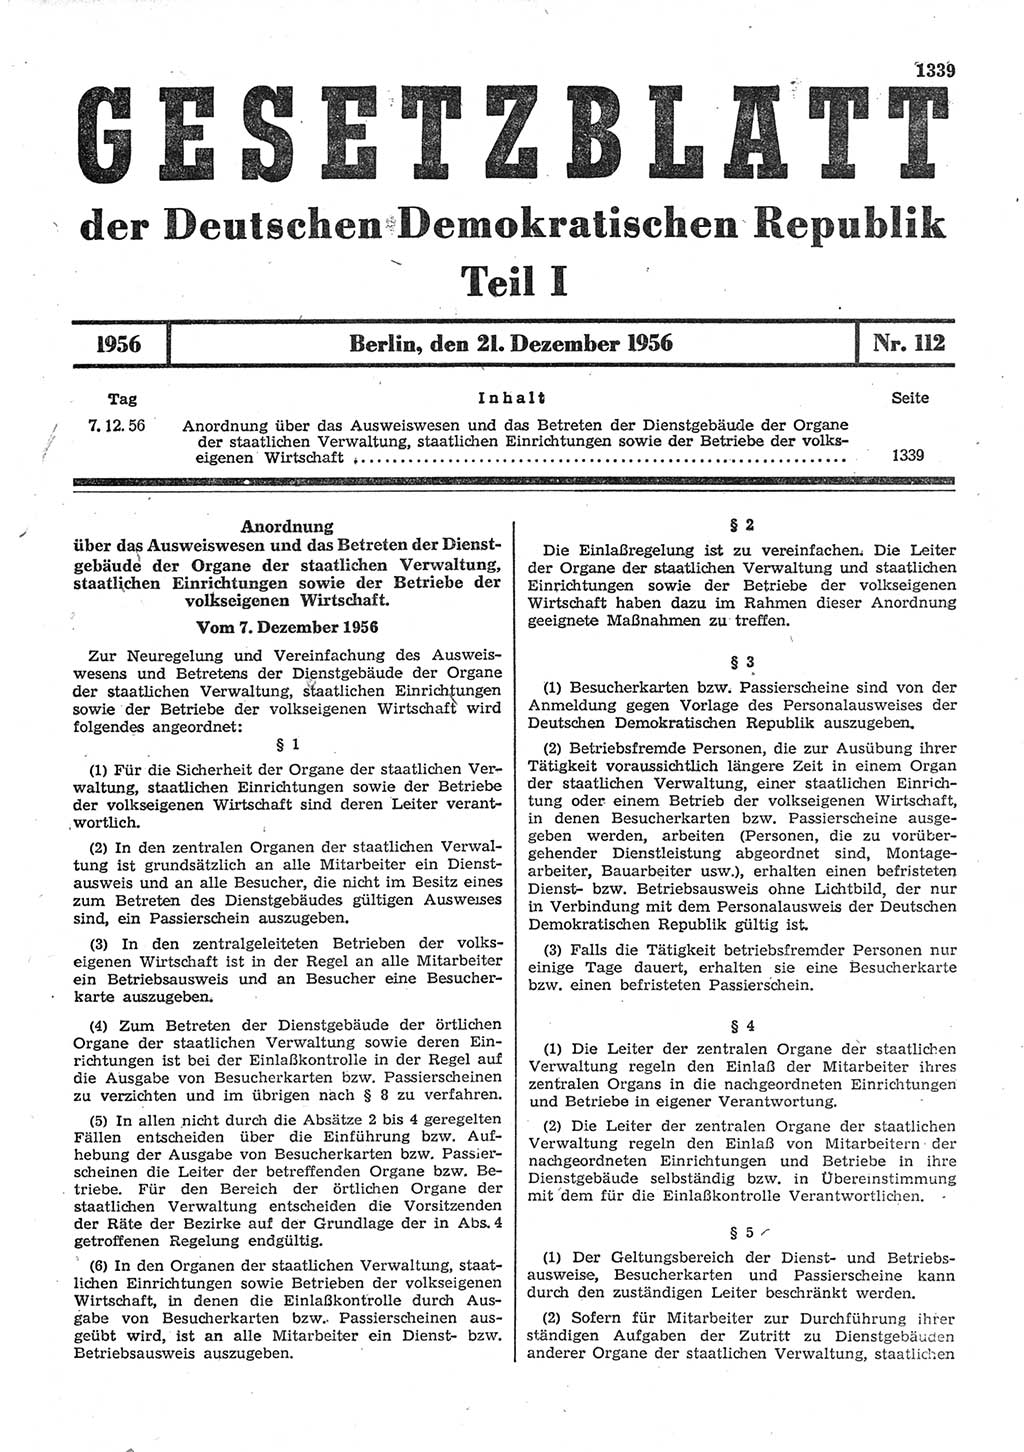 Gesetzblatt (GBl.) der Deutschen Demokratischen Republik (DDR) Teil Ⅰ 1956, Seite 1339 (GBl. DDR Ⅰ 1956, S. 1339)